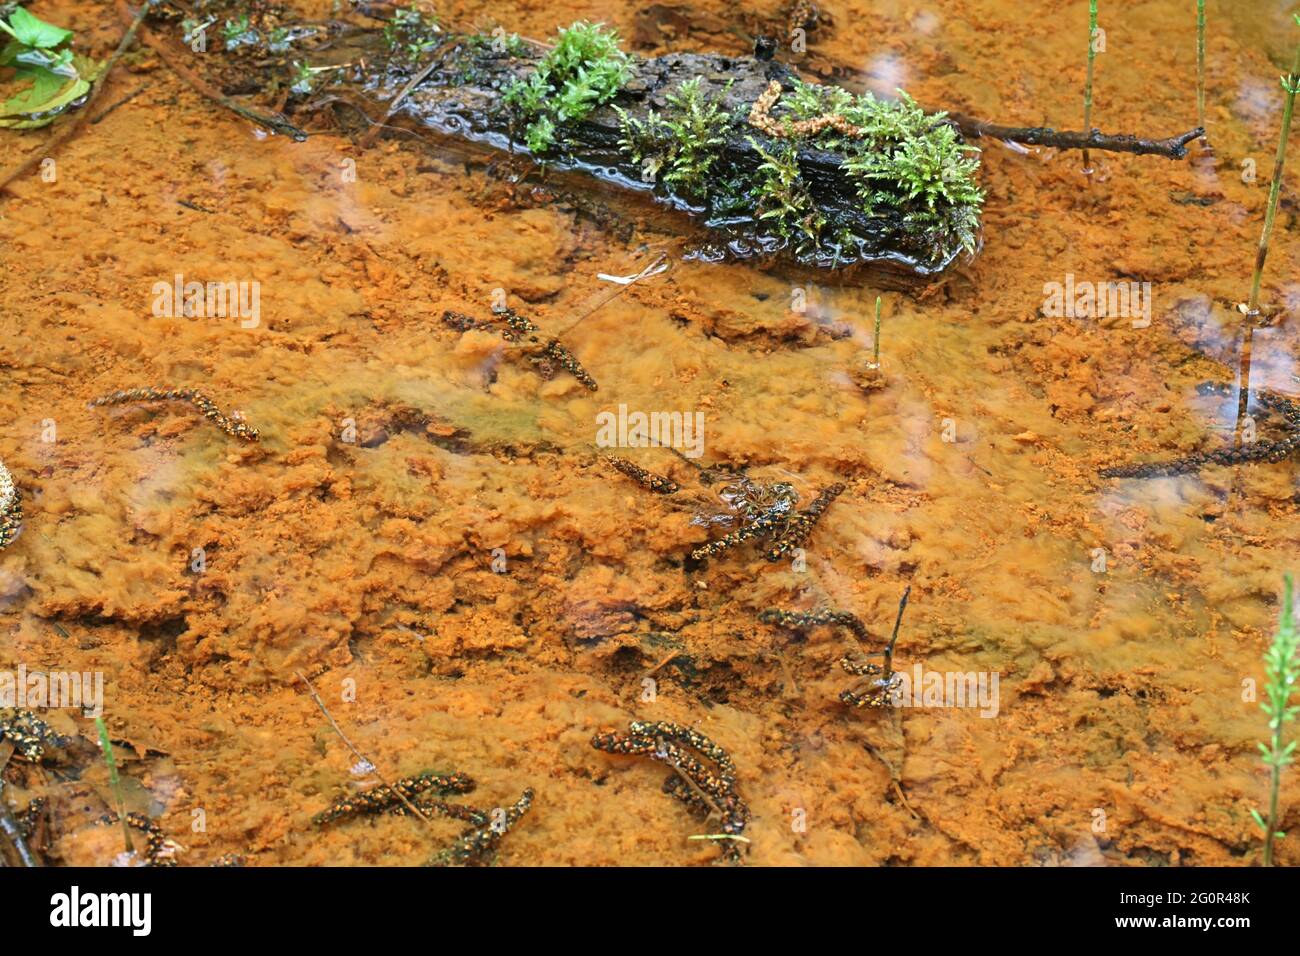 Bacterias oxidantes de hierro coloreando una corriente de bosque de fondo naranja Foto de stock